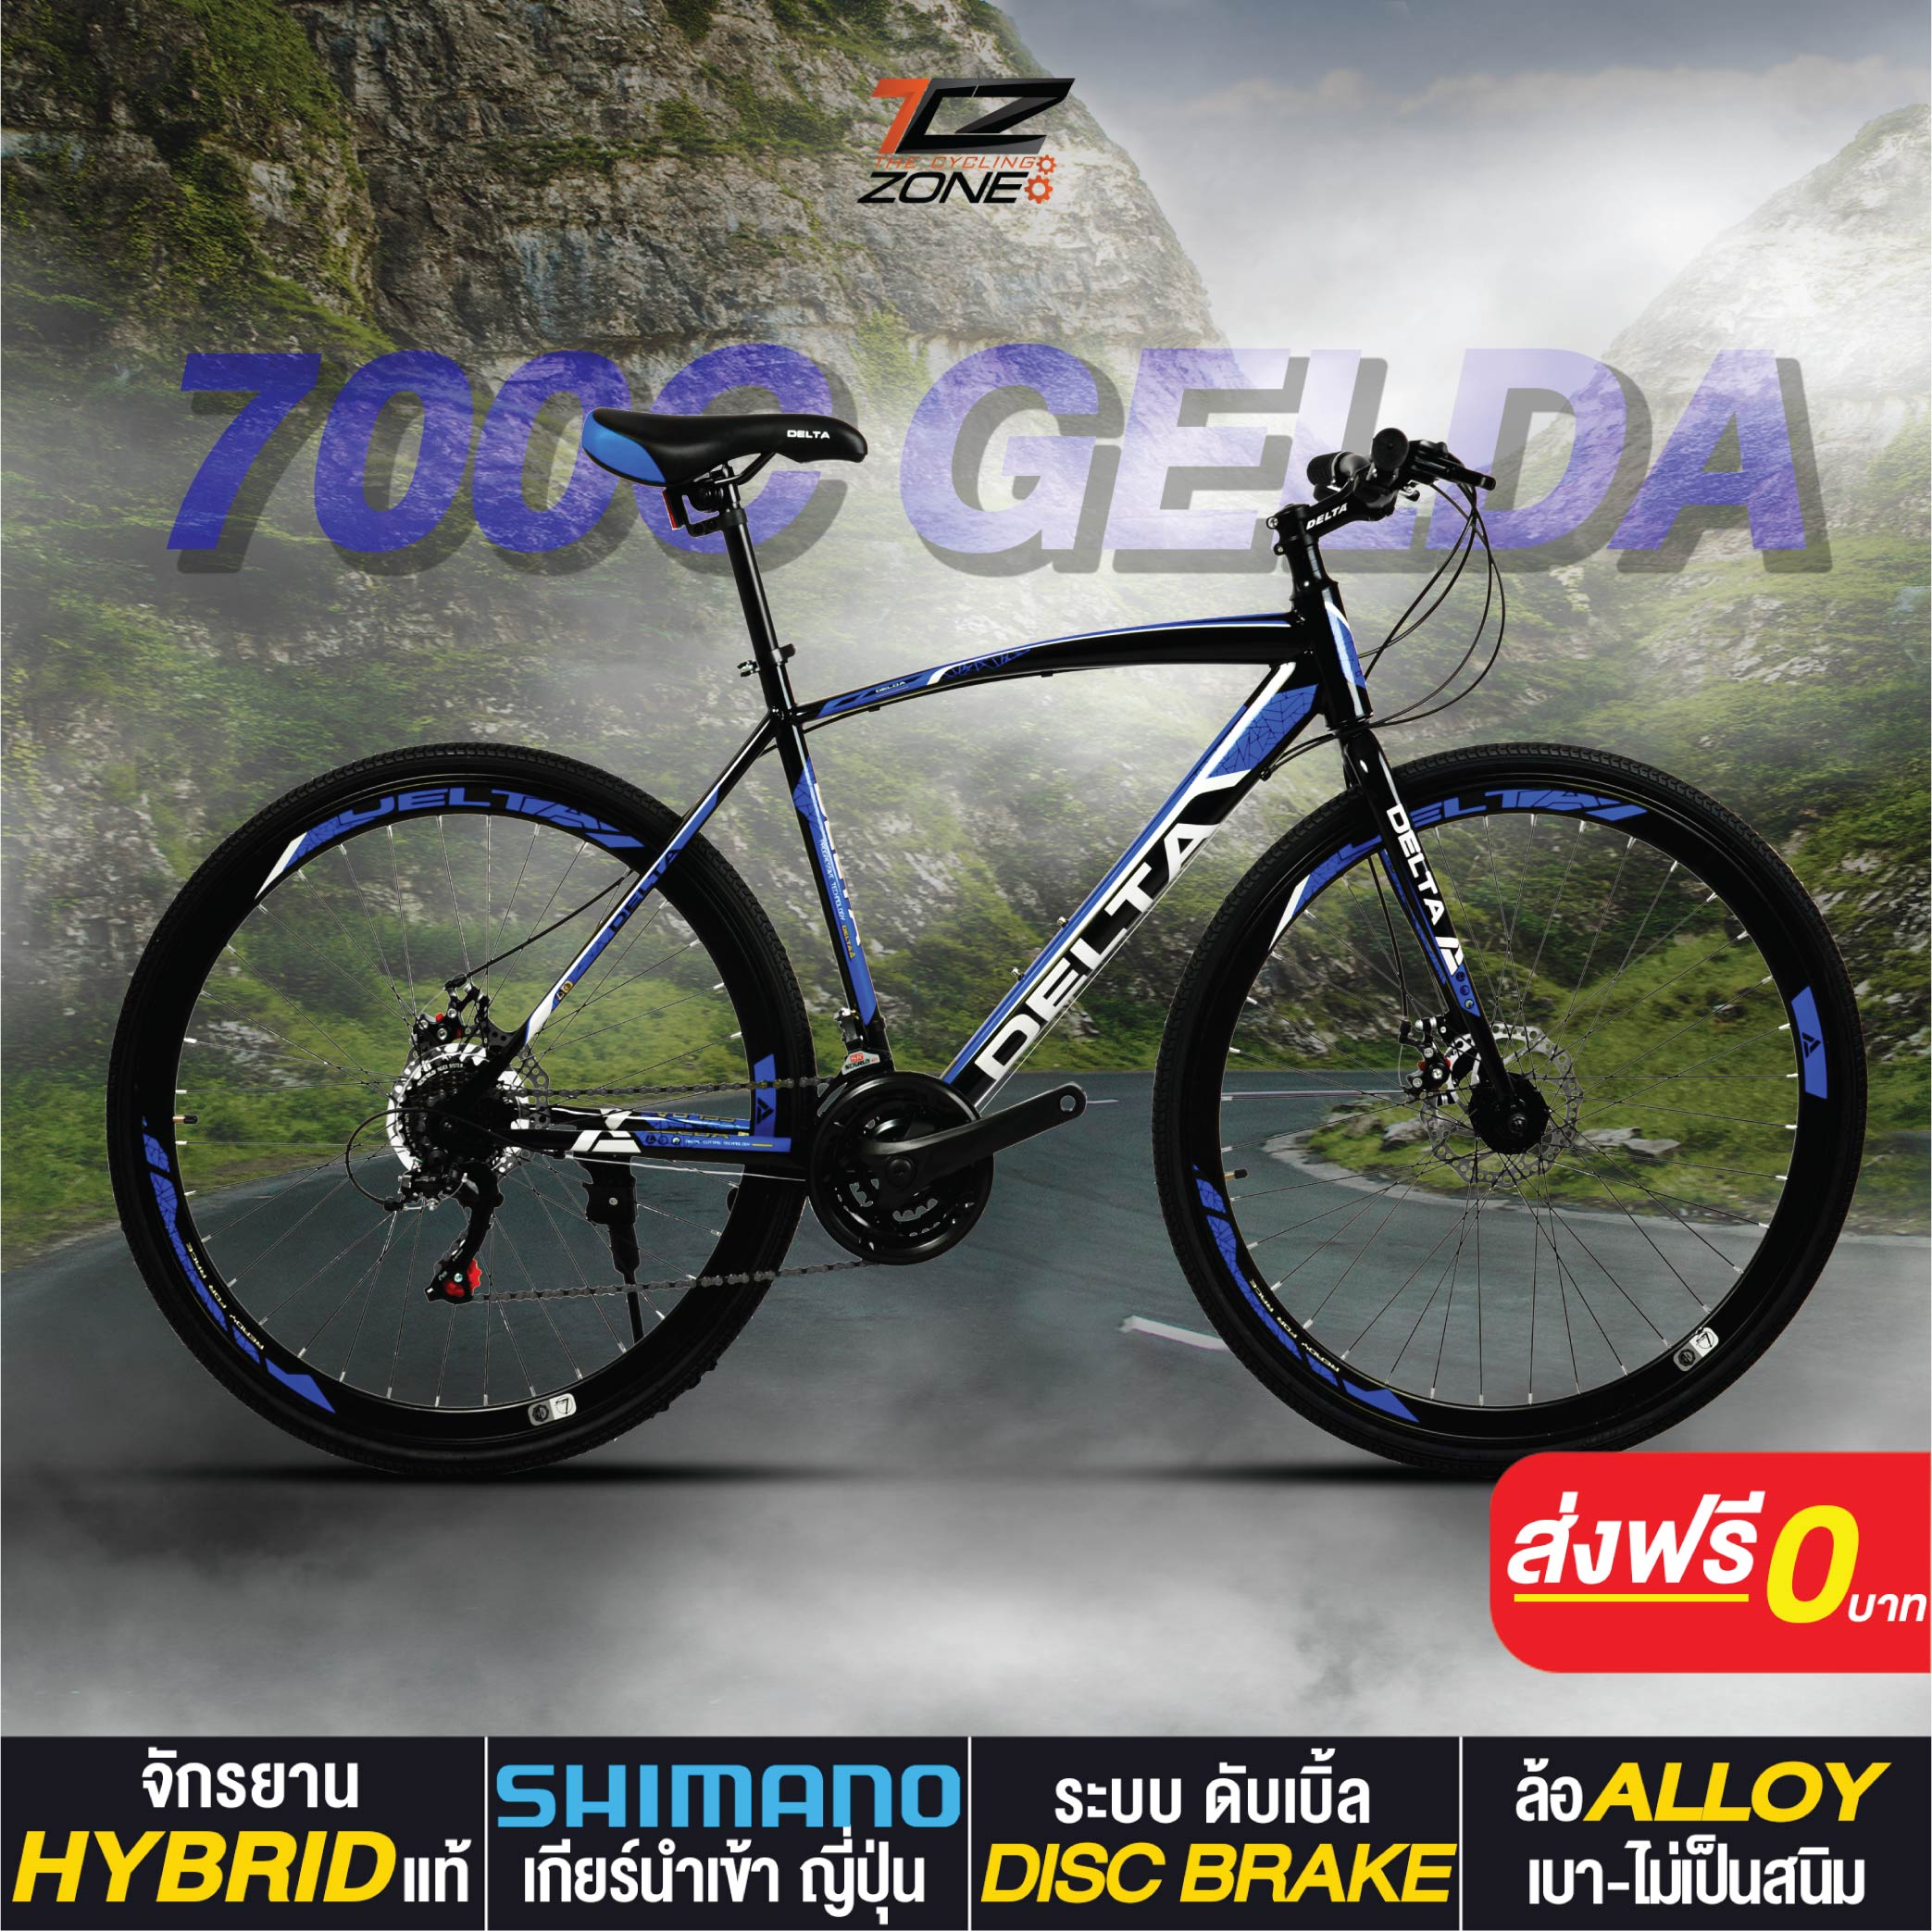 จักรยานไฮบริด 700C / DELTA เกียร์ SHIMANO 21 สปีด / ไซส์ 49 / รุ่น GELDA สีน้ำเงิน